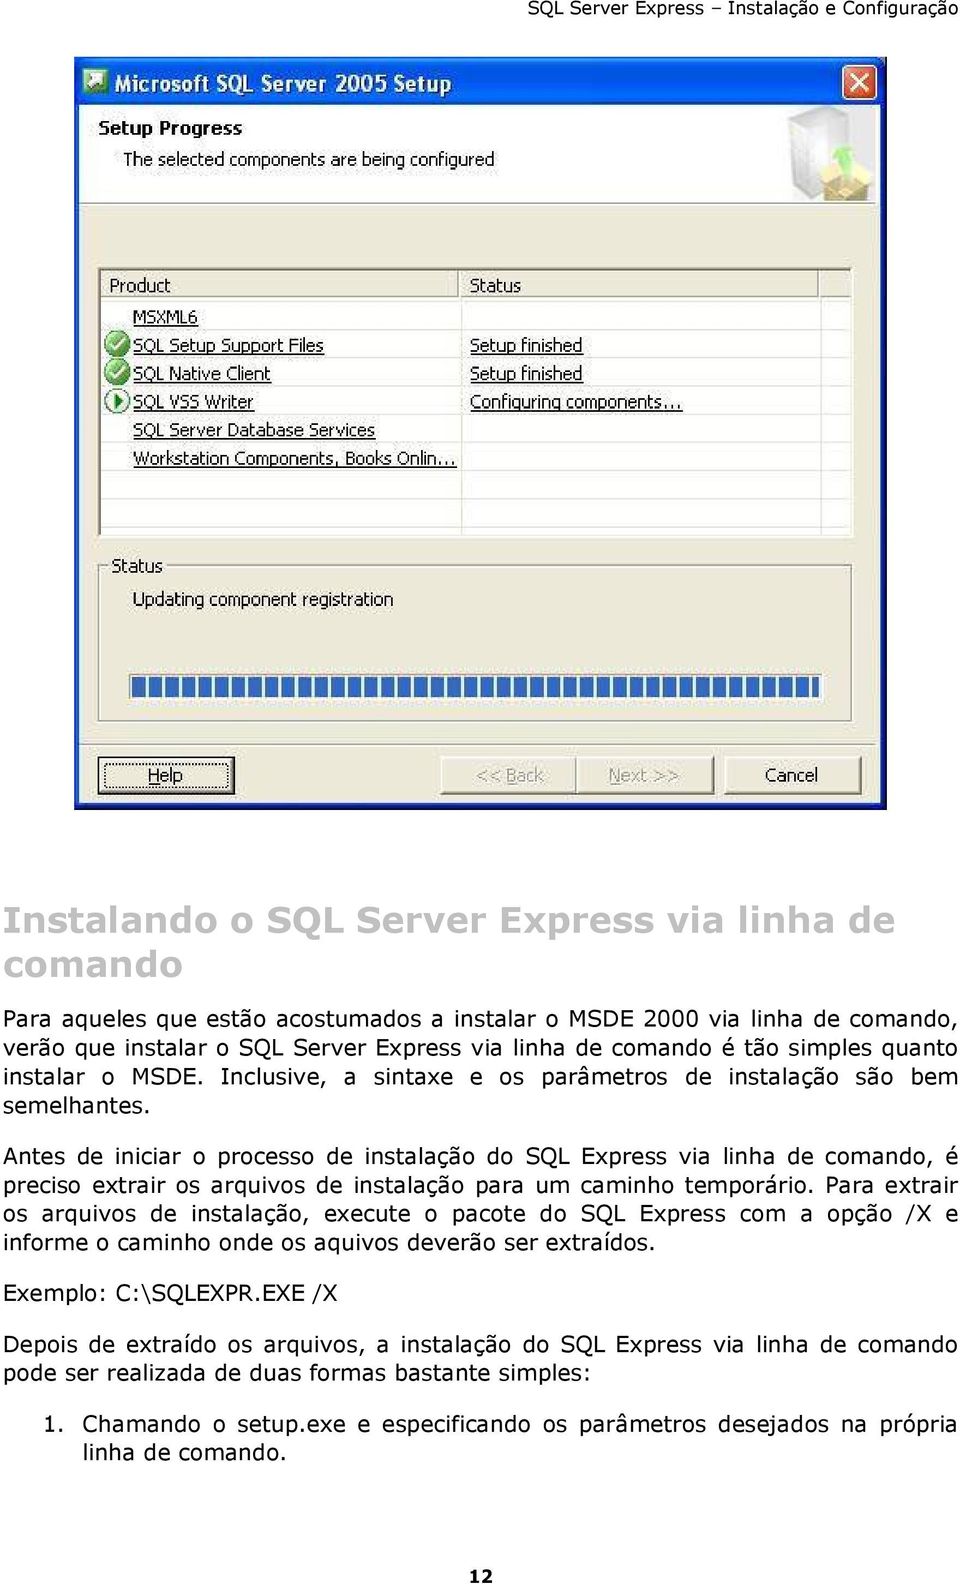 Antes de iniciar o processo de instalação do SQL Express via linha de comando, é preciso extrair os arquivos de instalação para um caminho temporário.